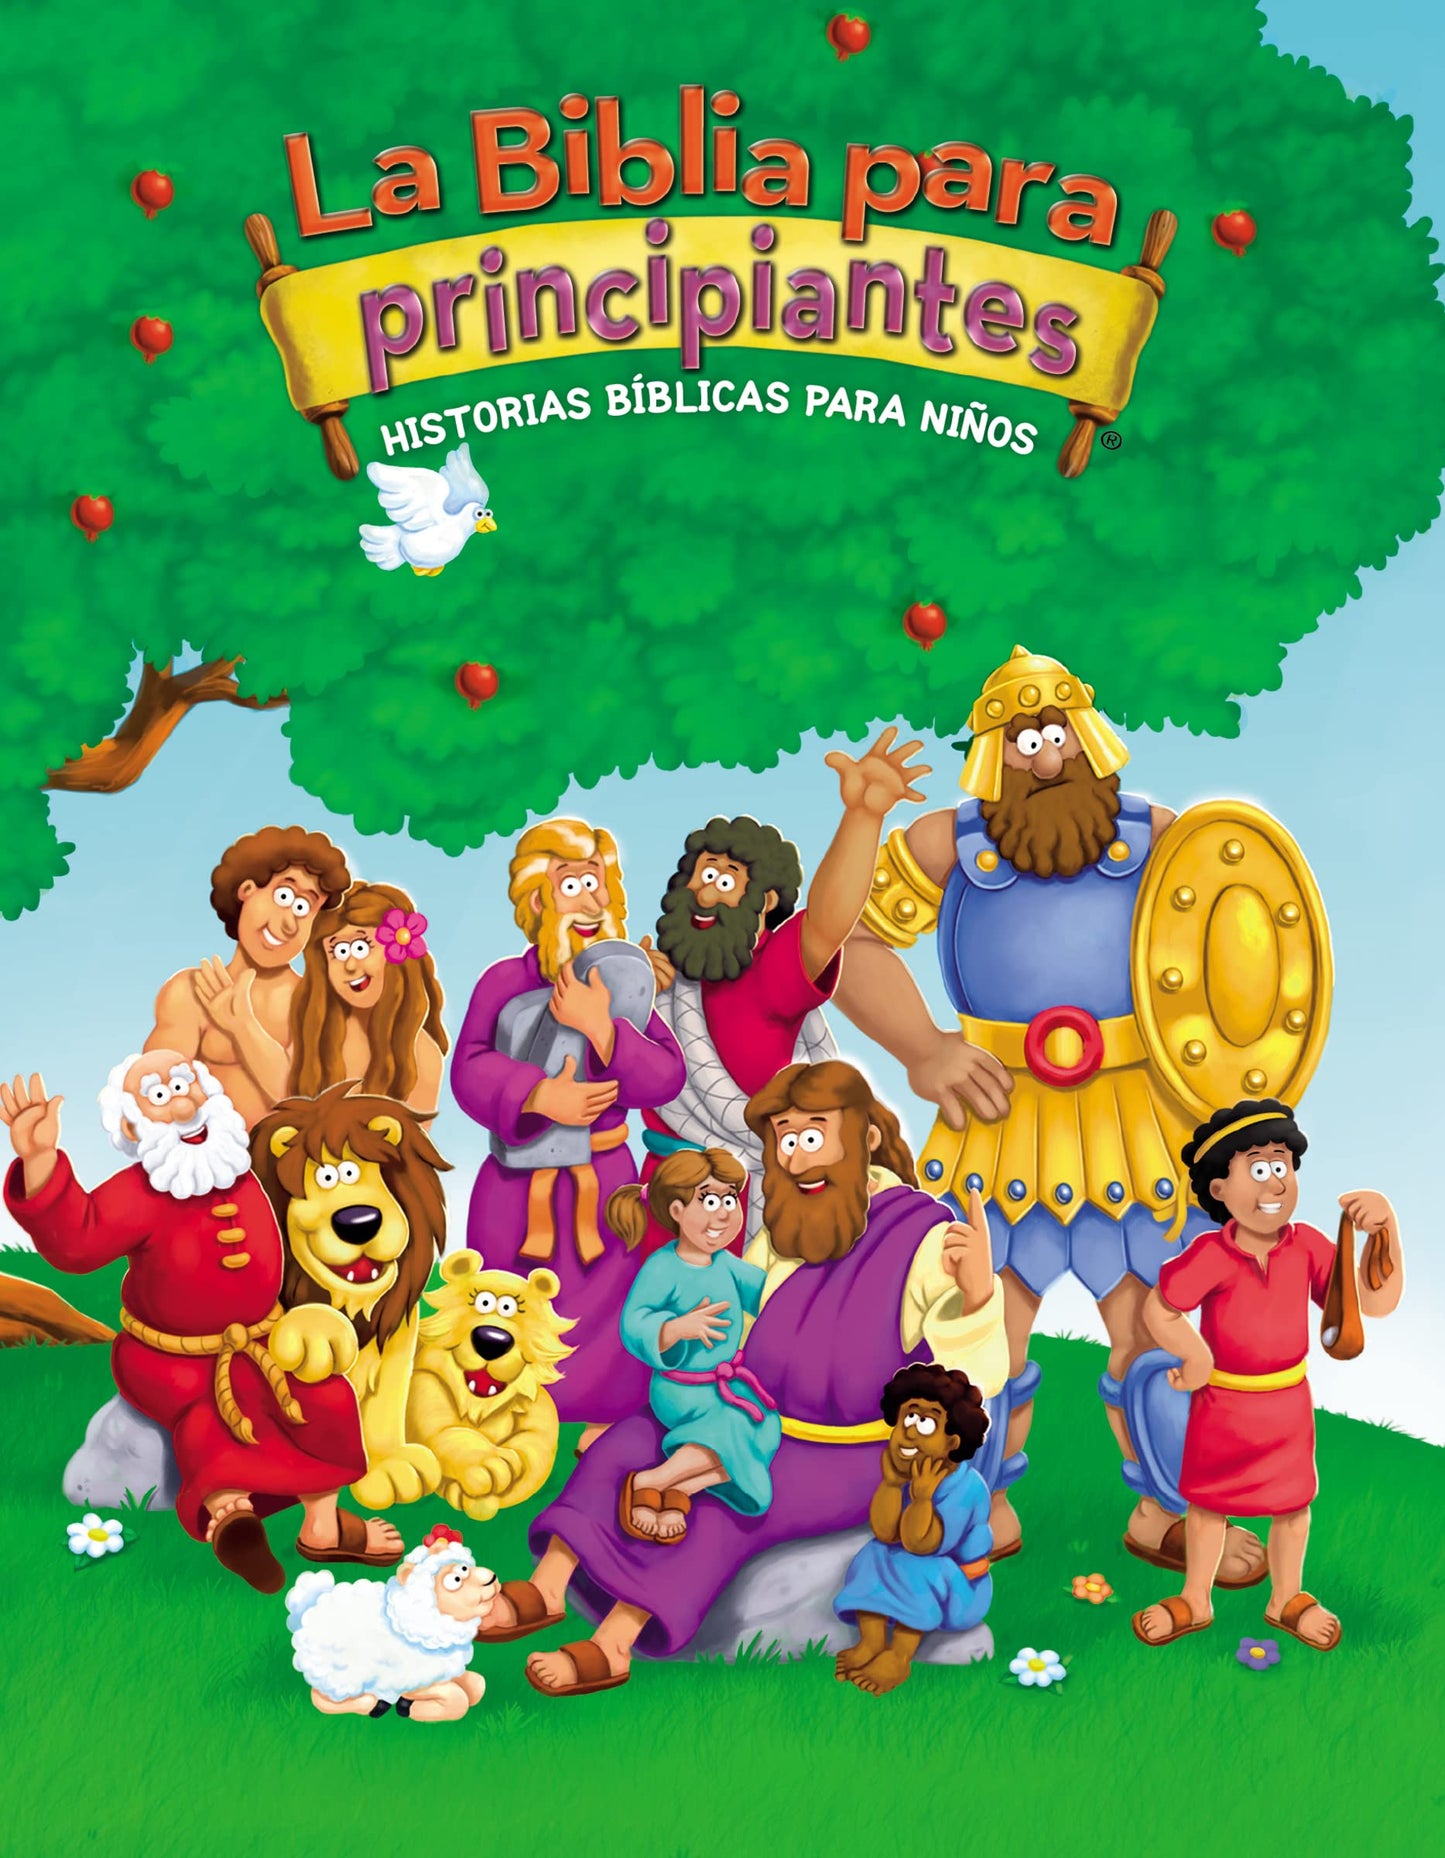 La Biblia para principiantes: Historias bíblicas para niños (The Beginner's Bible) (Spanish Edition)